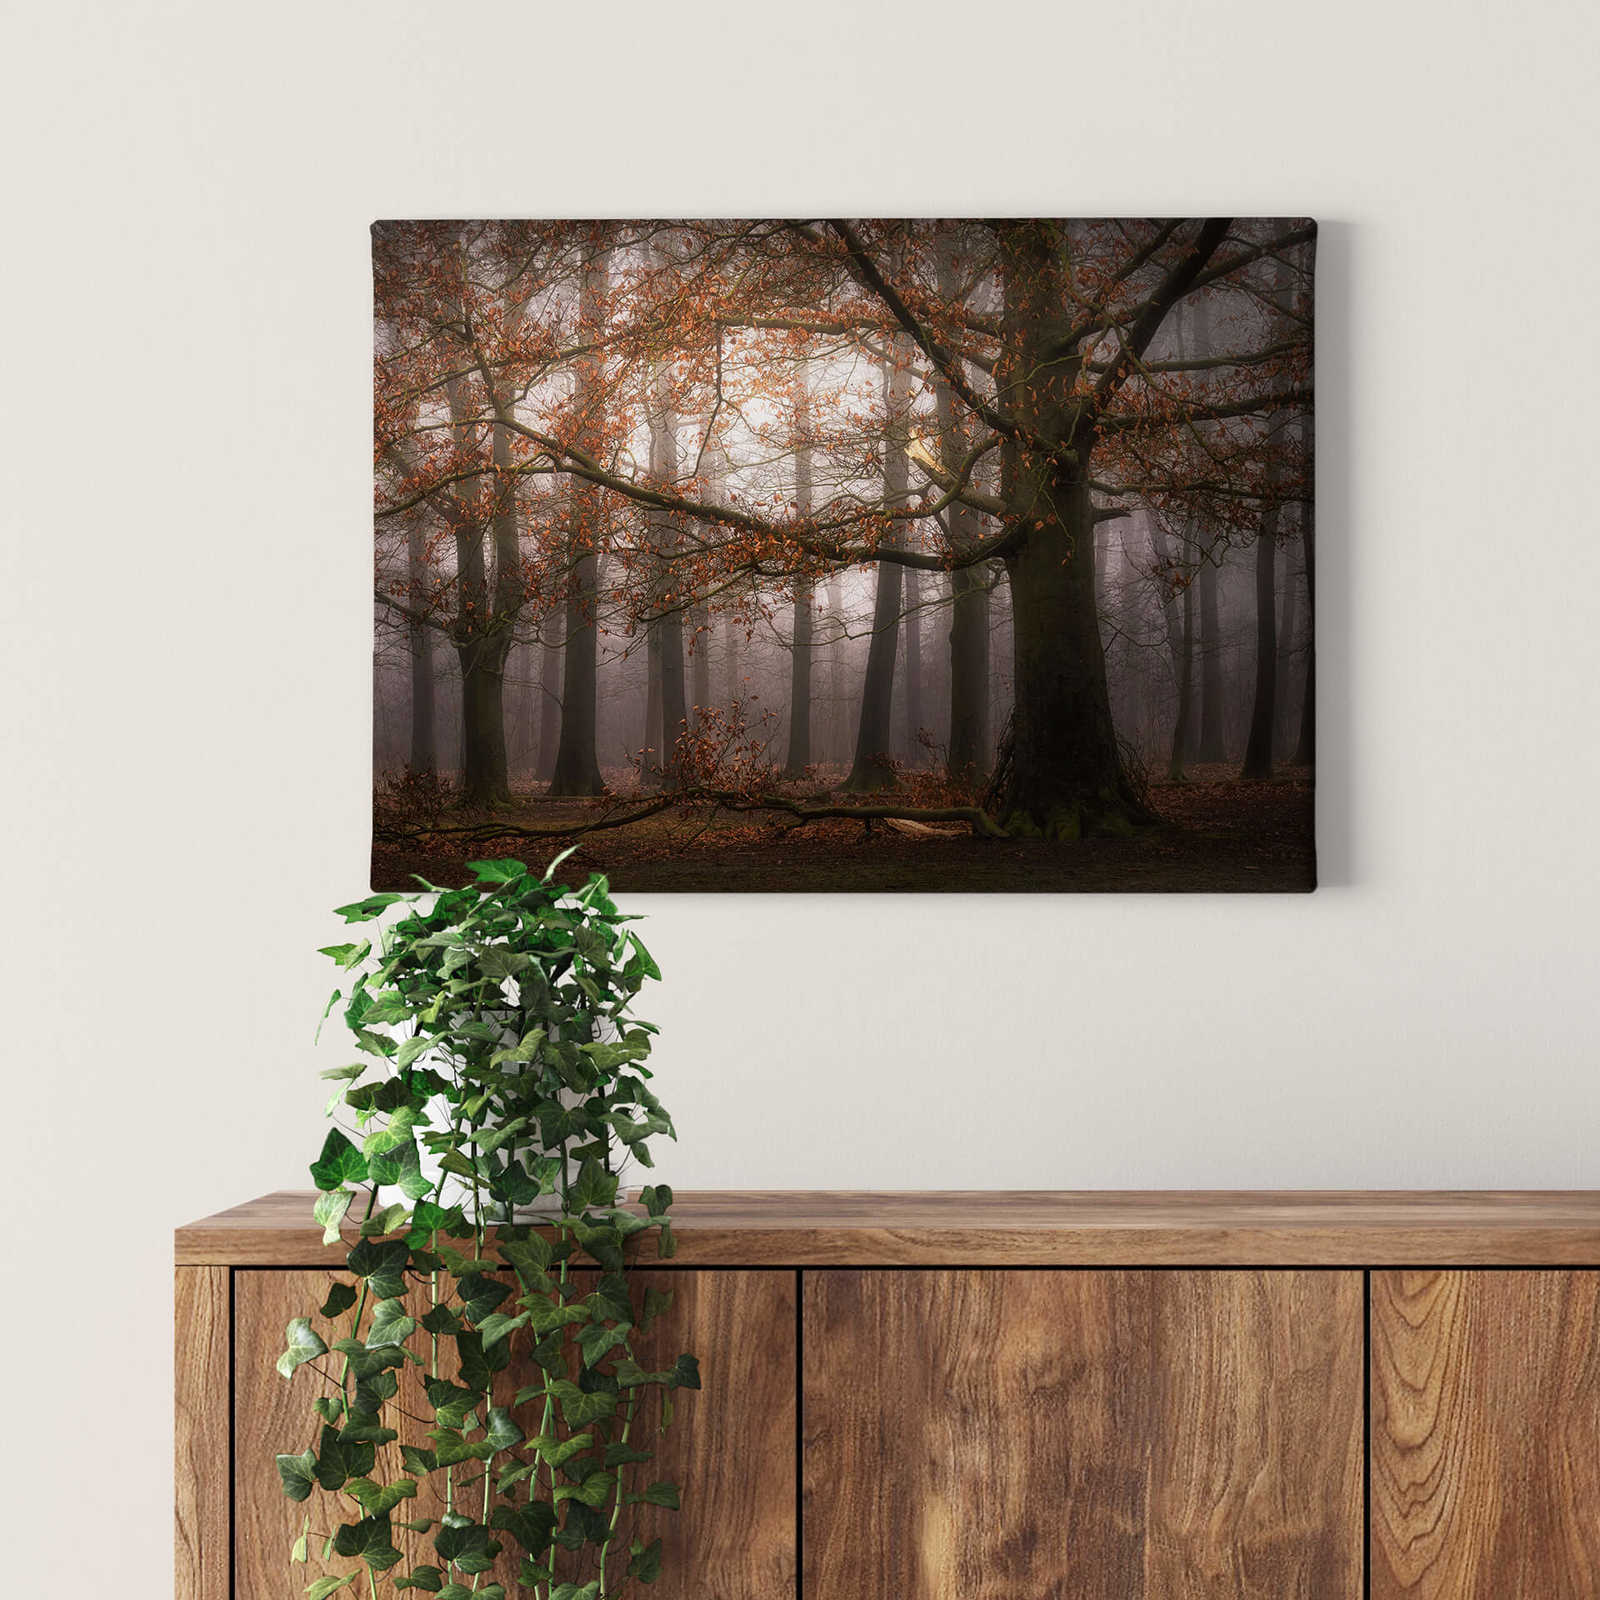             Cuadro en lienzo con bosque frondoso en noviembre by Digemans - 0,70 m x 0,50 m
        